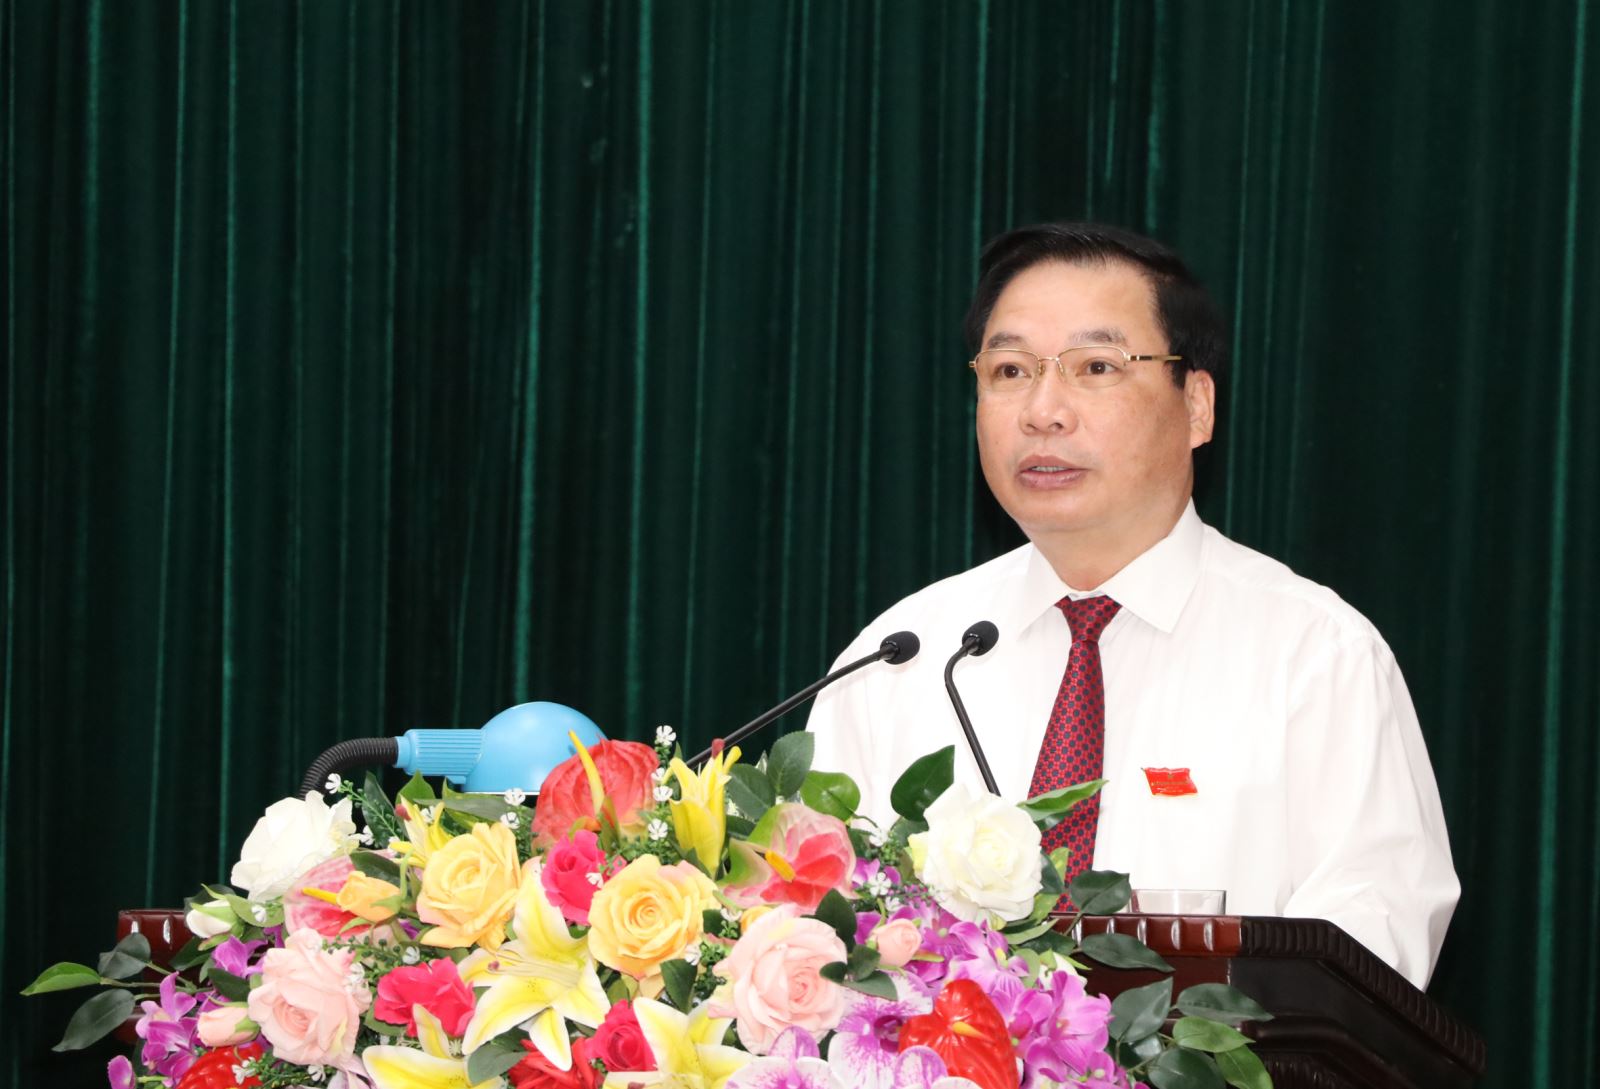 Ủy viên Ban Thường vụ Tỉnh ủy, Phó Chủ tịch Thường trực UBND tỉnh Tống Quang Thìn trình bày báo cáo phát triển kinh tế - xã hội